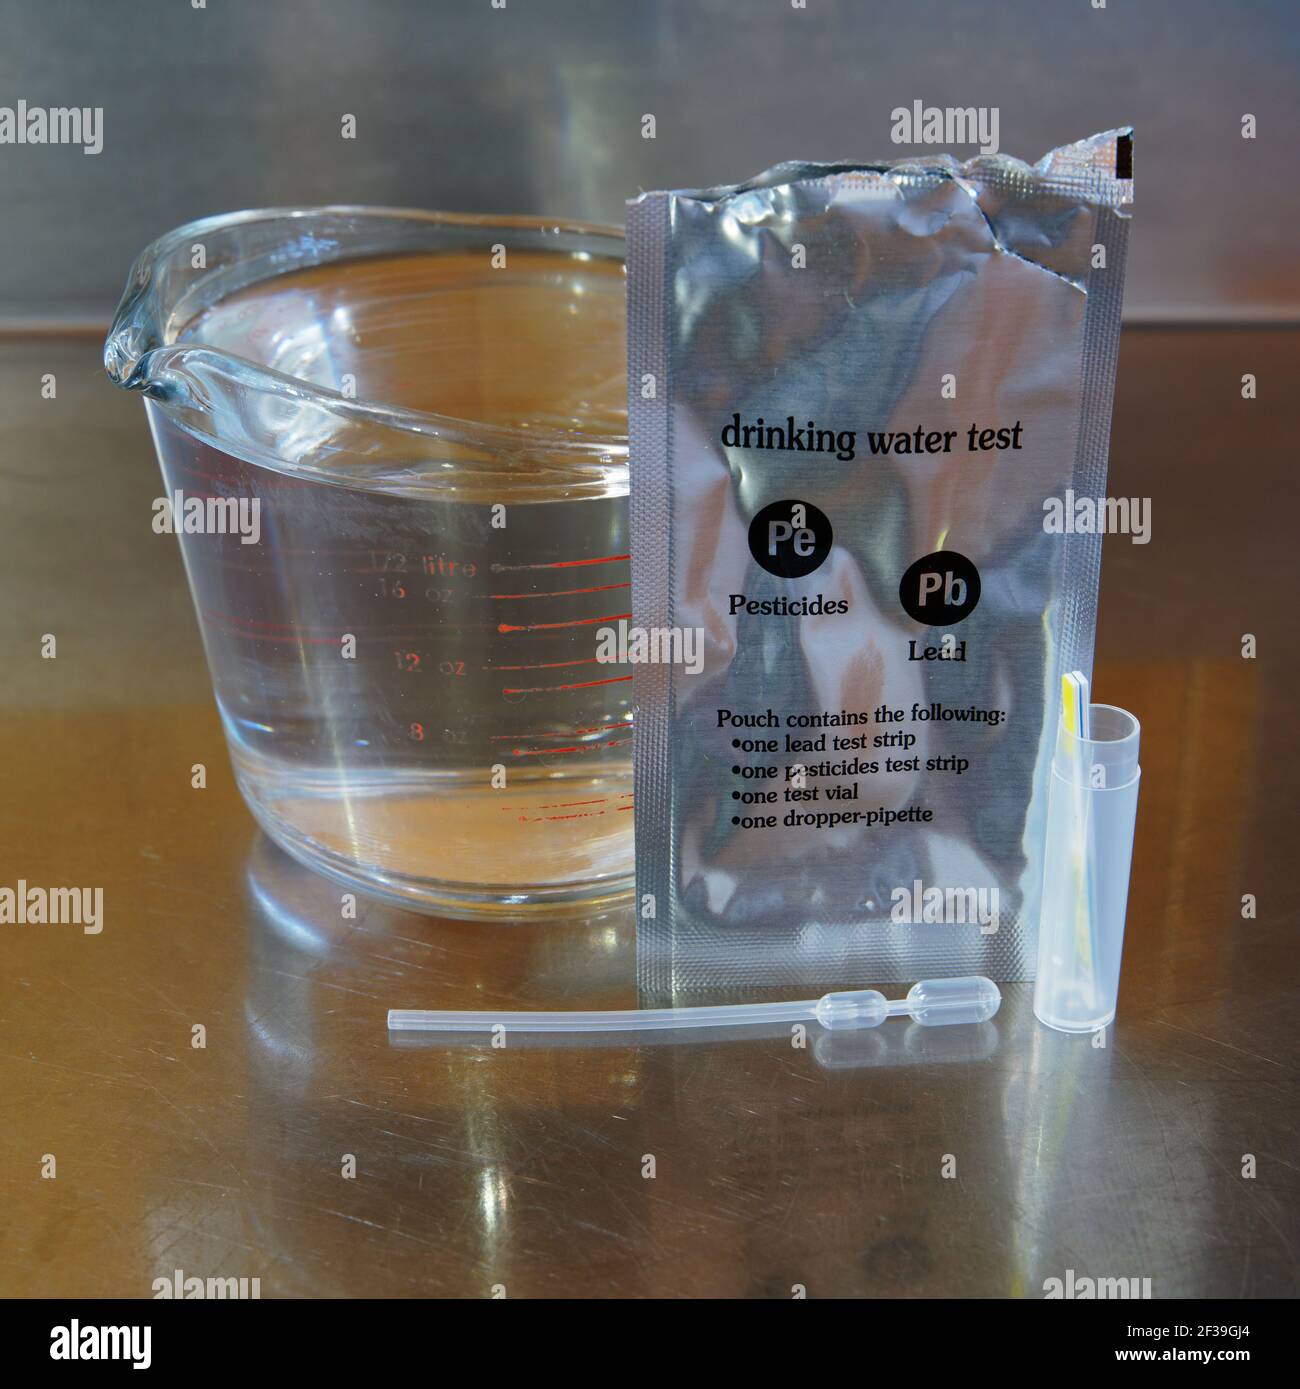 Home Water Testing Kit (Pb) für Blei oder Pestizide Kontamination von  häuslicher Trinkwasser Stockfotografie - Alamy